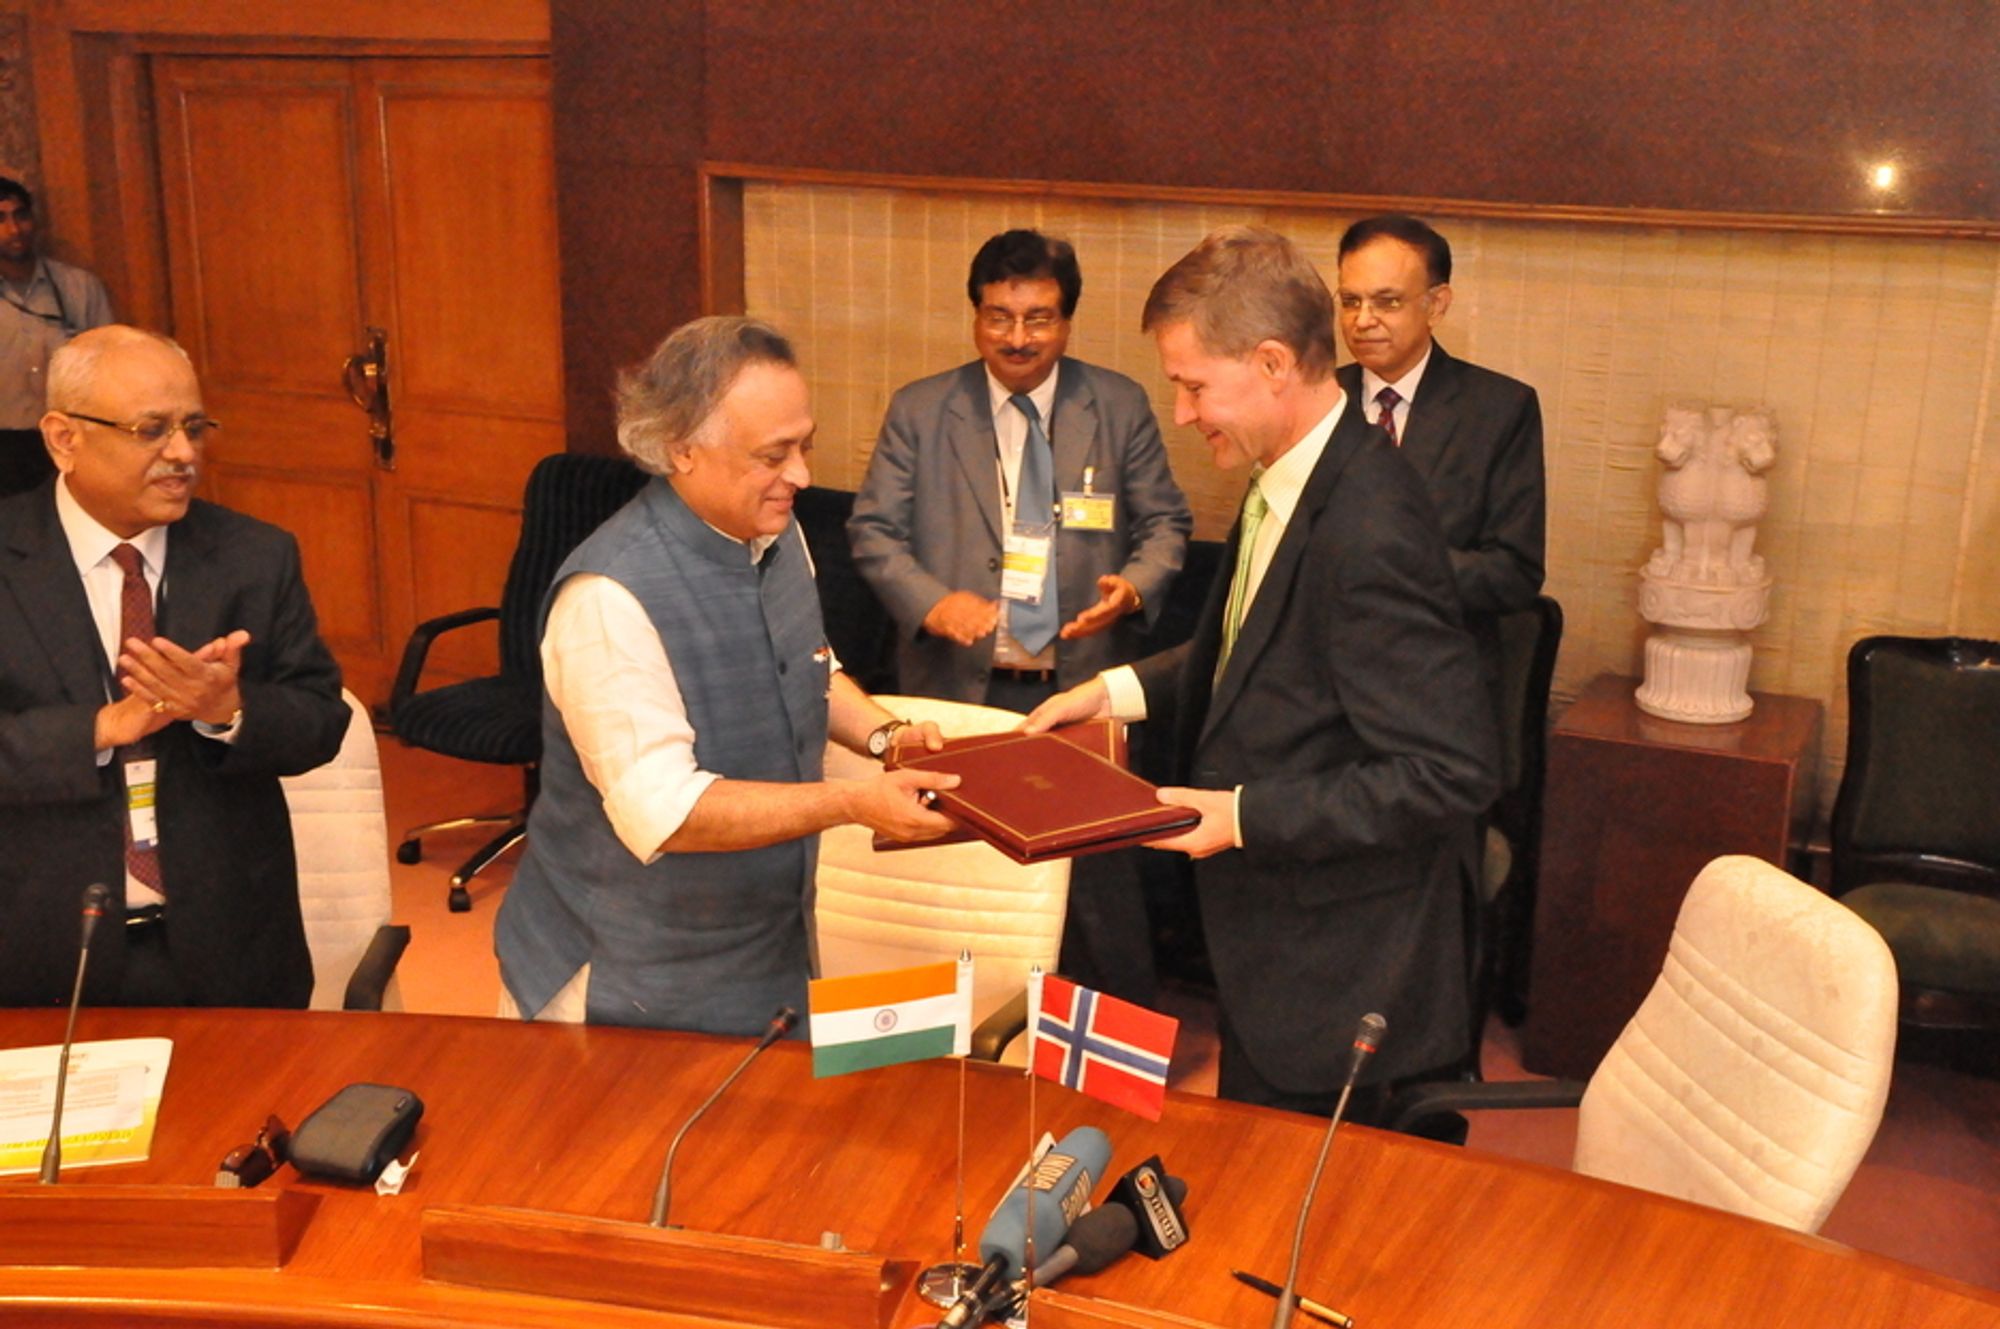 AVTALE: Optimisme preger Indias miljøvernminister Jairam Ramesh og Erik Solheim etter at avtale om implementering av miljøteknologi ble inngått under en internasjonal klimakonferanse i Delhi, India.